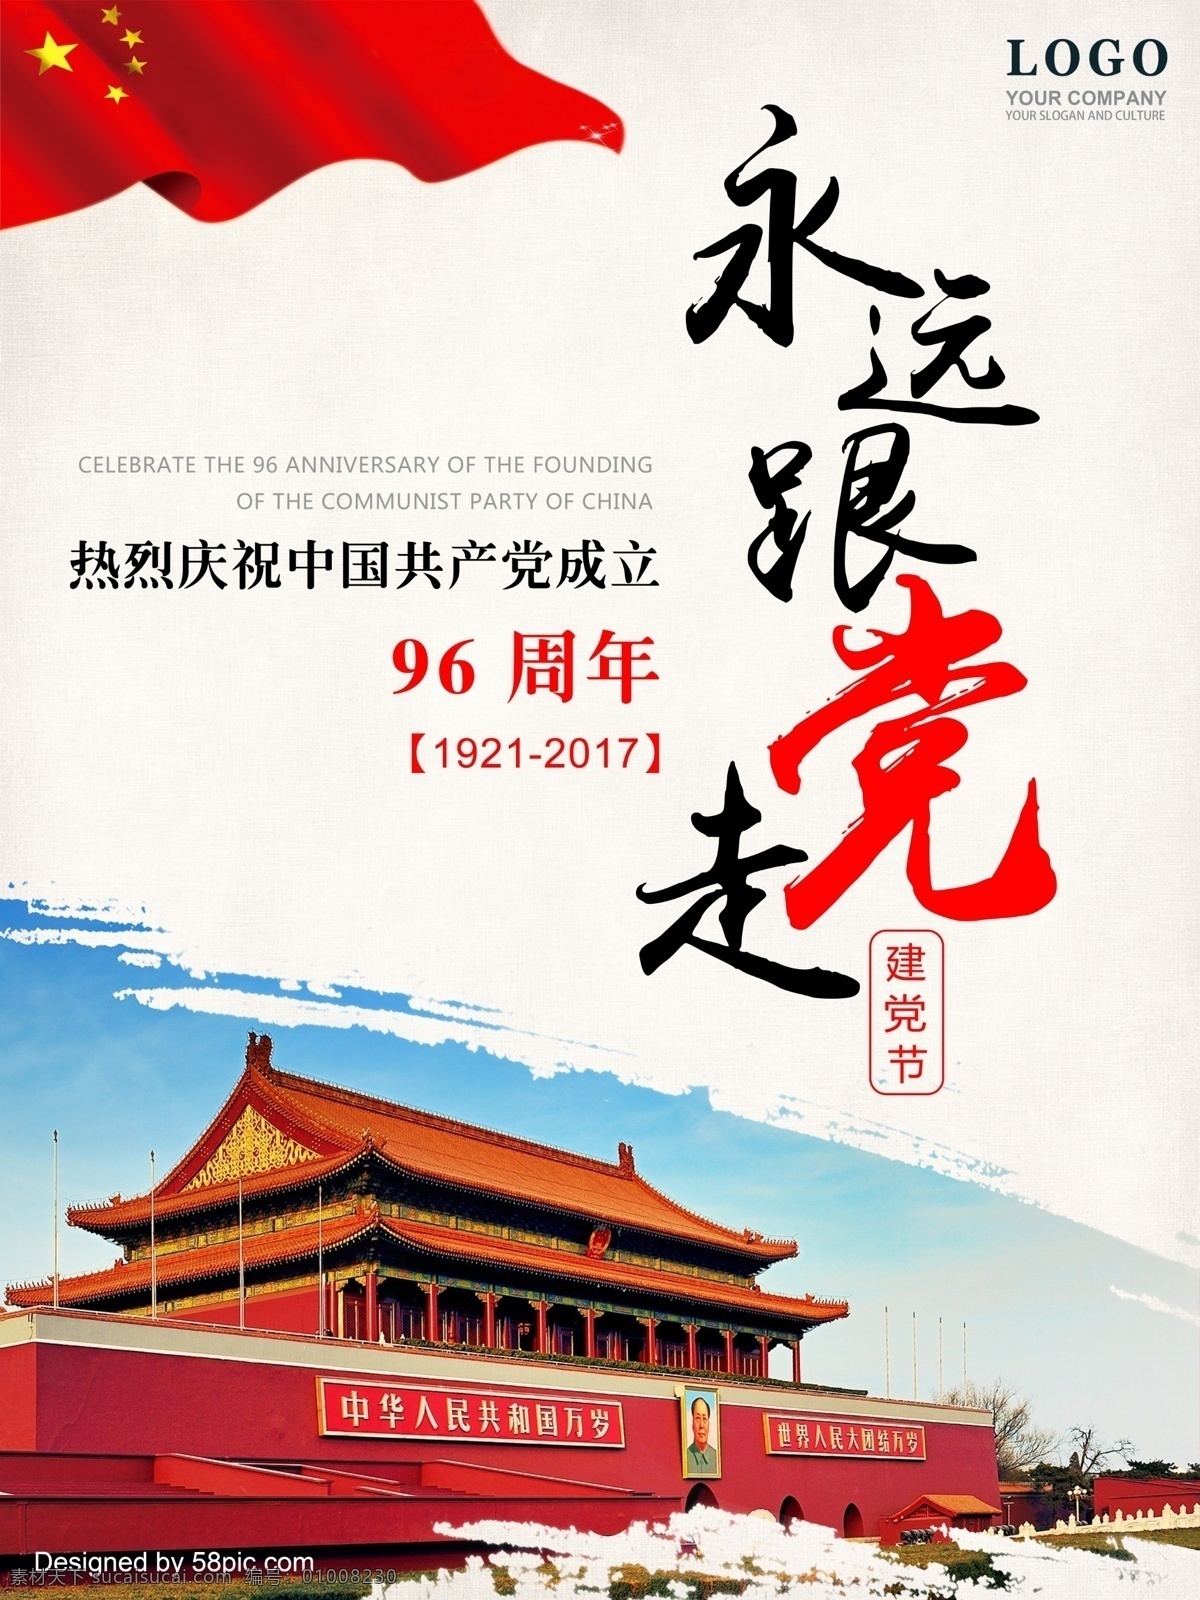 建党 节 建党节 海报 展板 永远跟党走 中国共产党 成立 96周年 周年